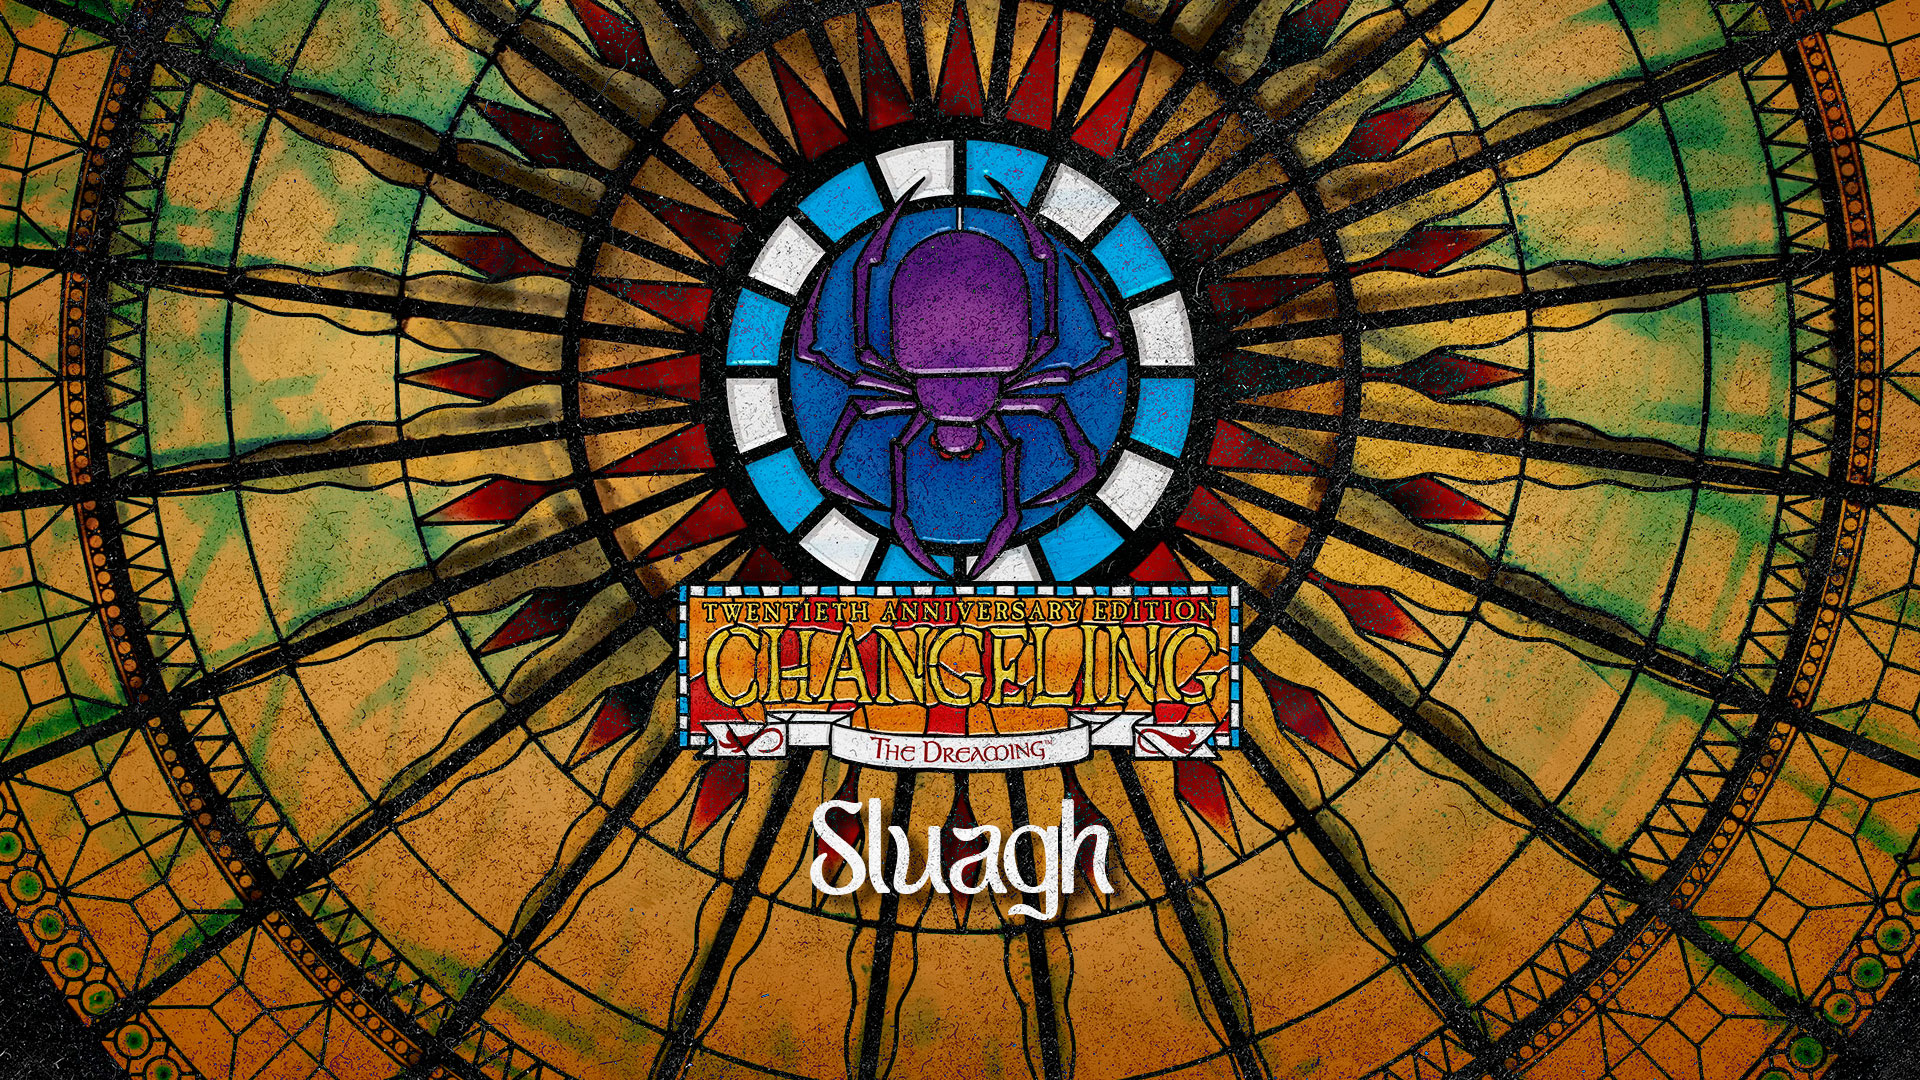 Sluagh – Kiths de Changeling: O Sonhar